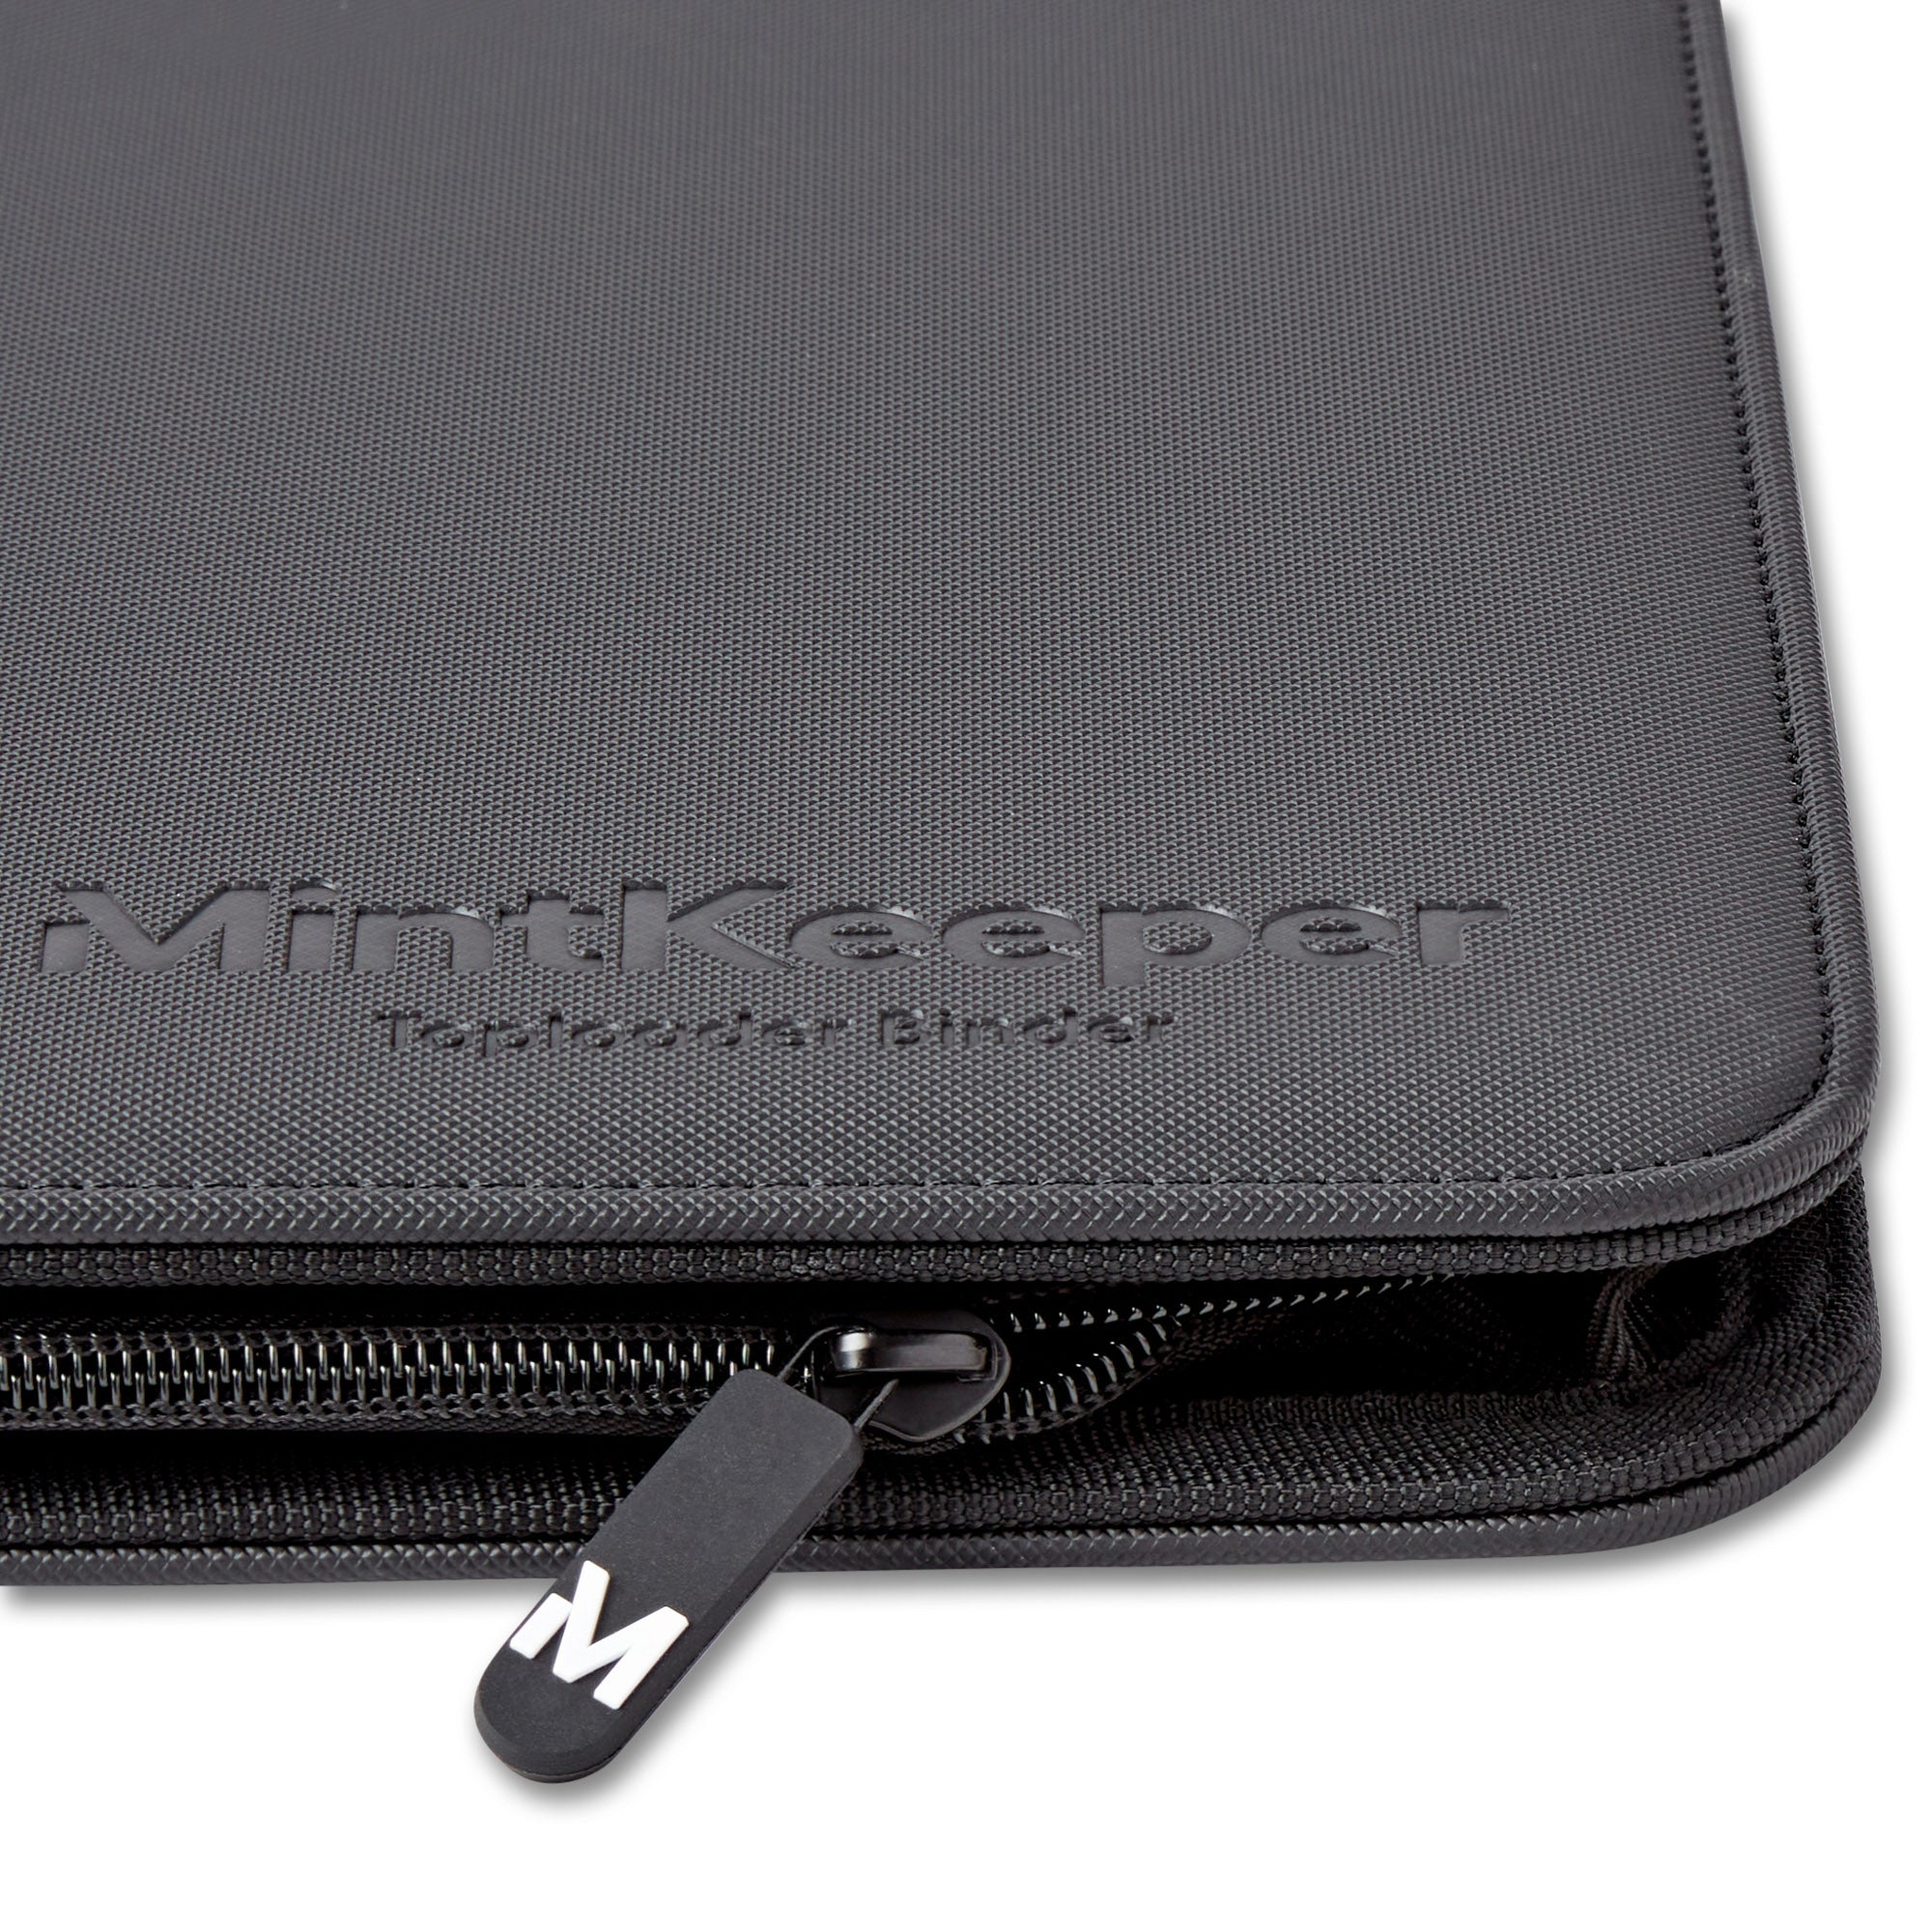 MintKeeper - 252 Toploader Binder - 9 Pocket